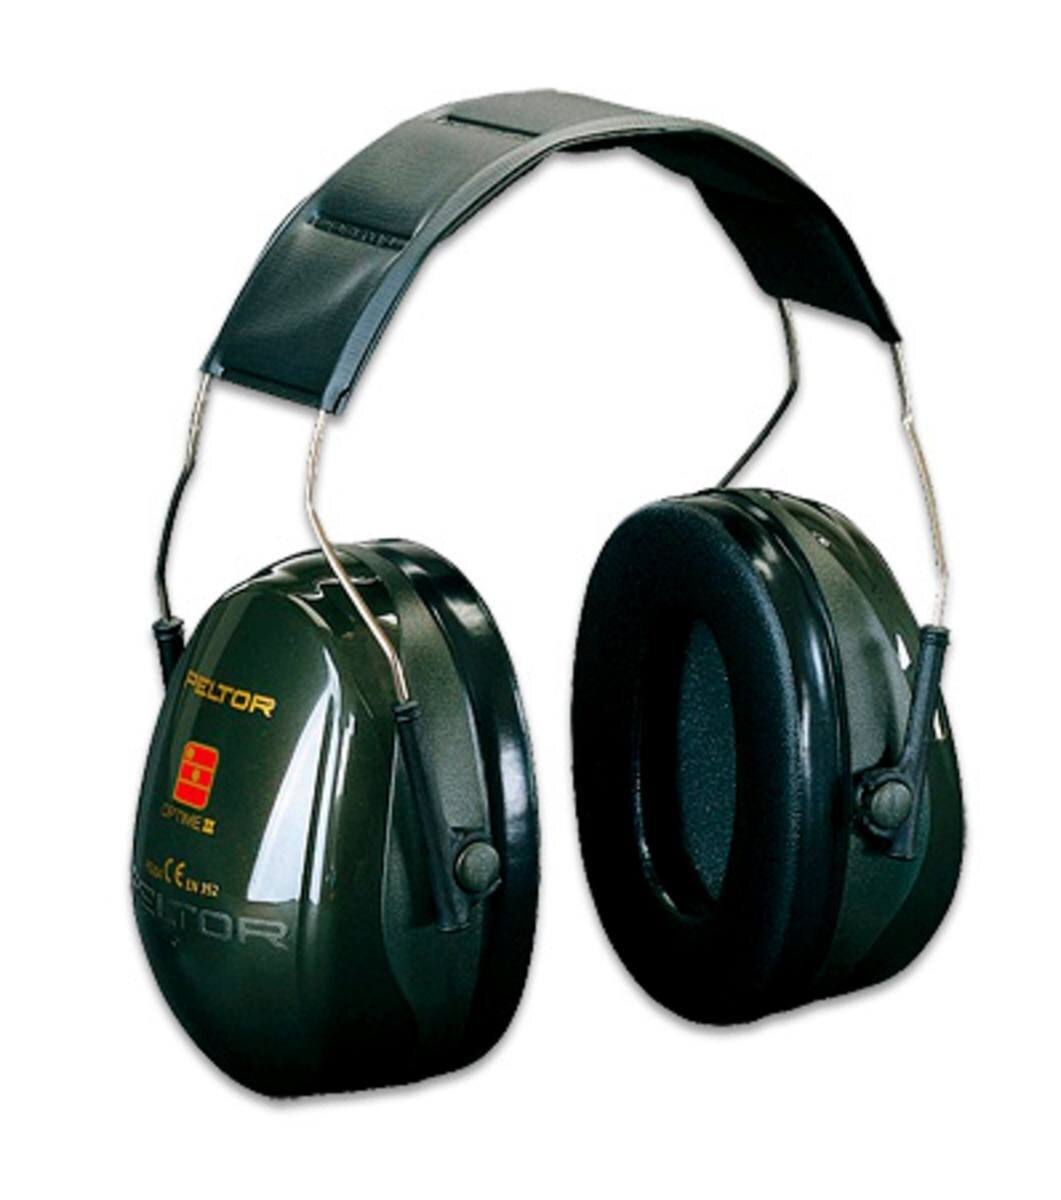 3M PELTOR Optime III oorkappen, hoofdband, zwart, SNR=35 dB, H540